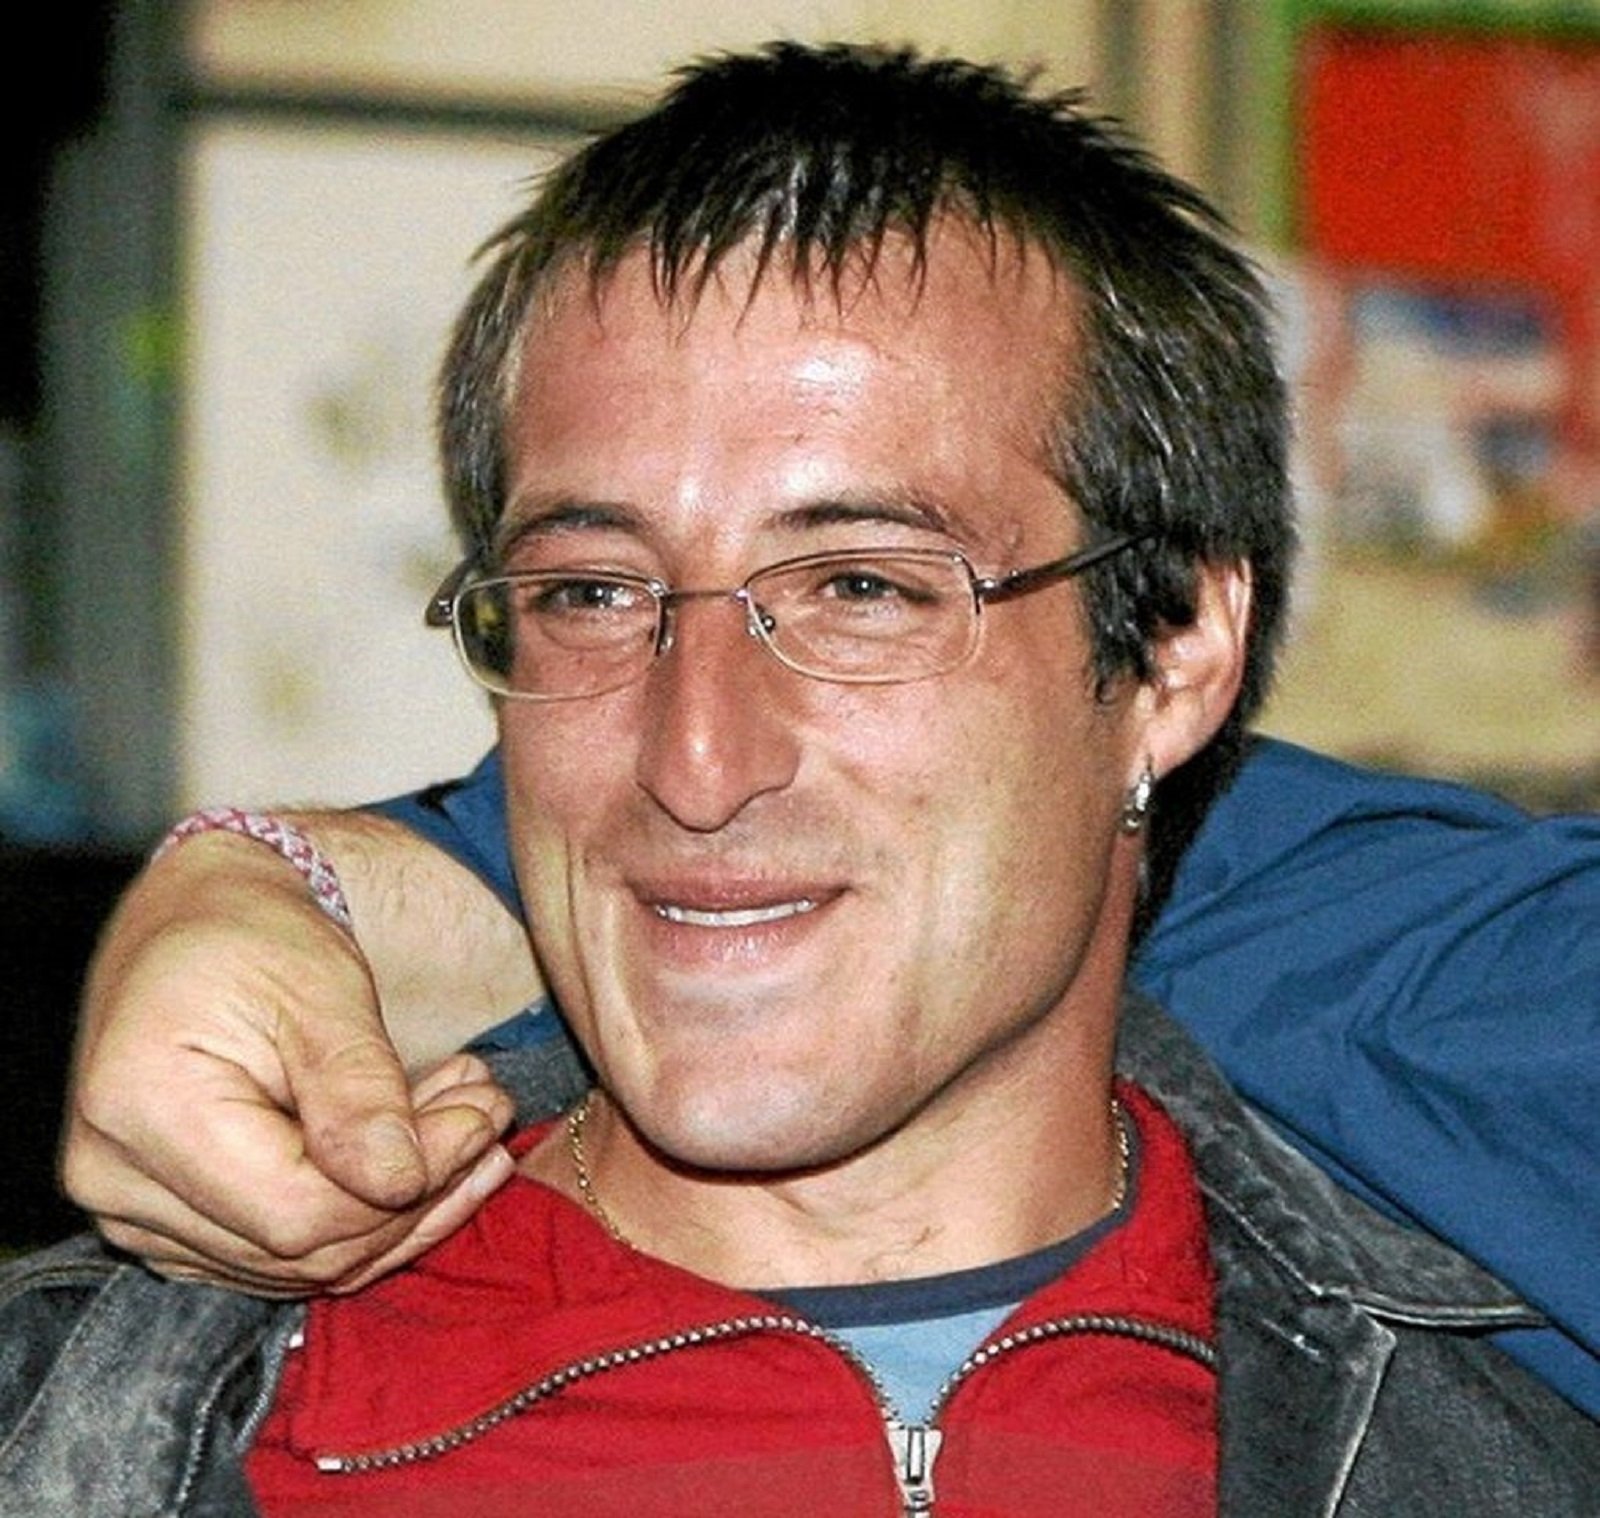 La jutgessa deixa en llibertat l'excap d'ETA David Pla lliurat per França